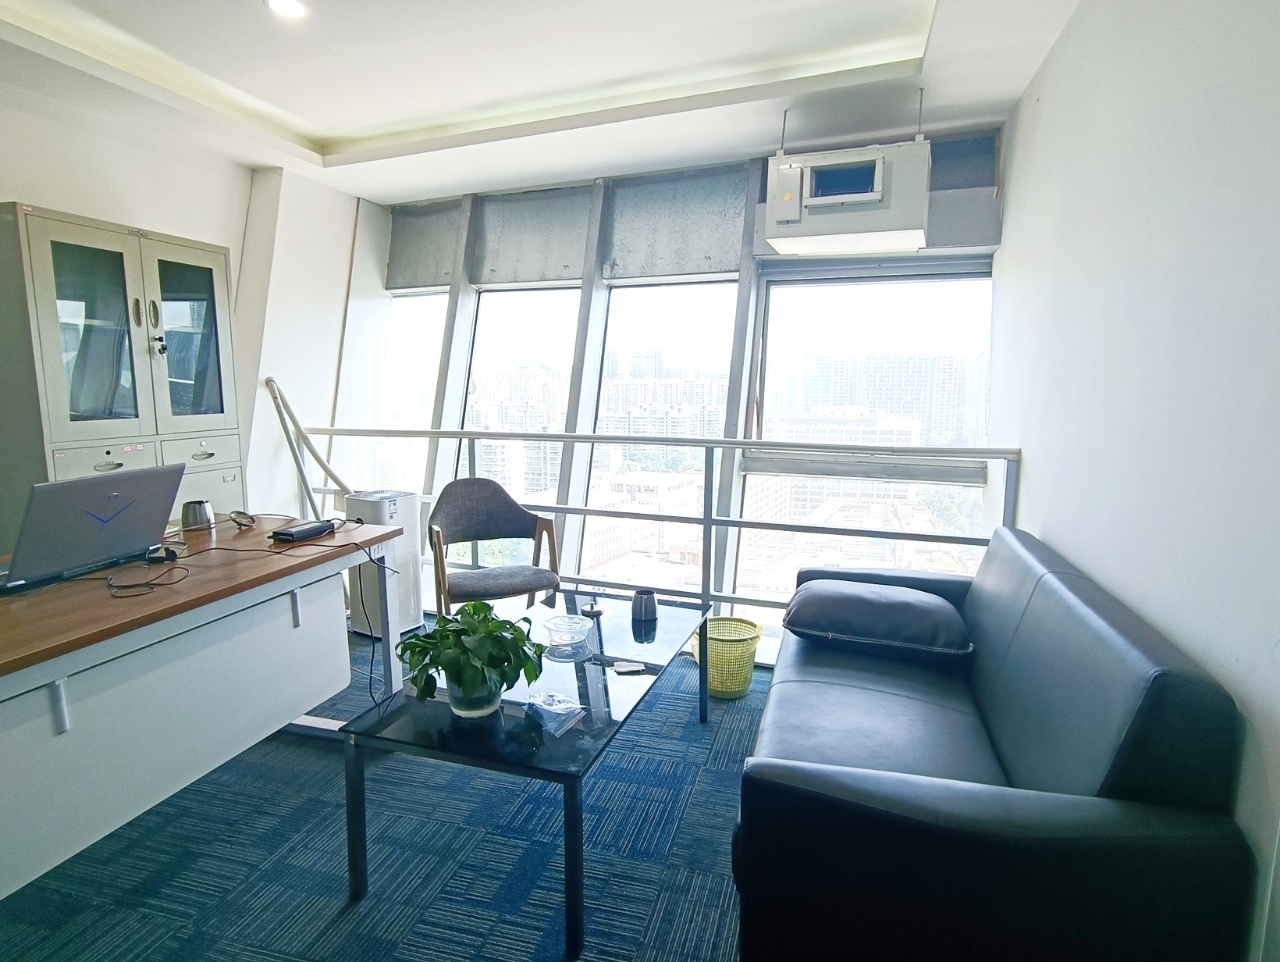 高新区新世纪环球中心100平精装小面积办公室 交通便利 位置优越  含物业